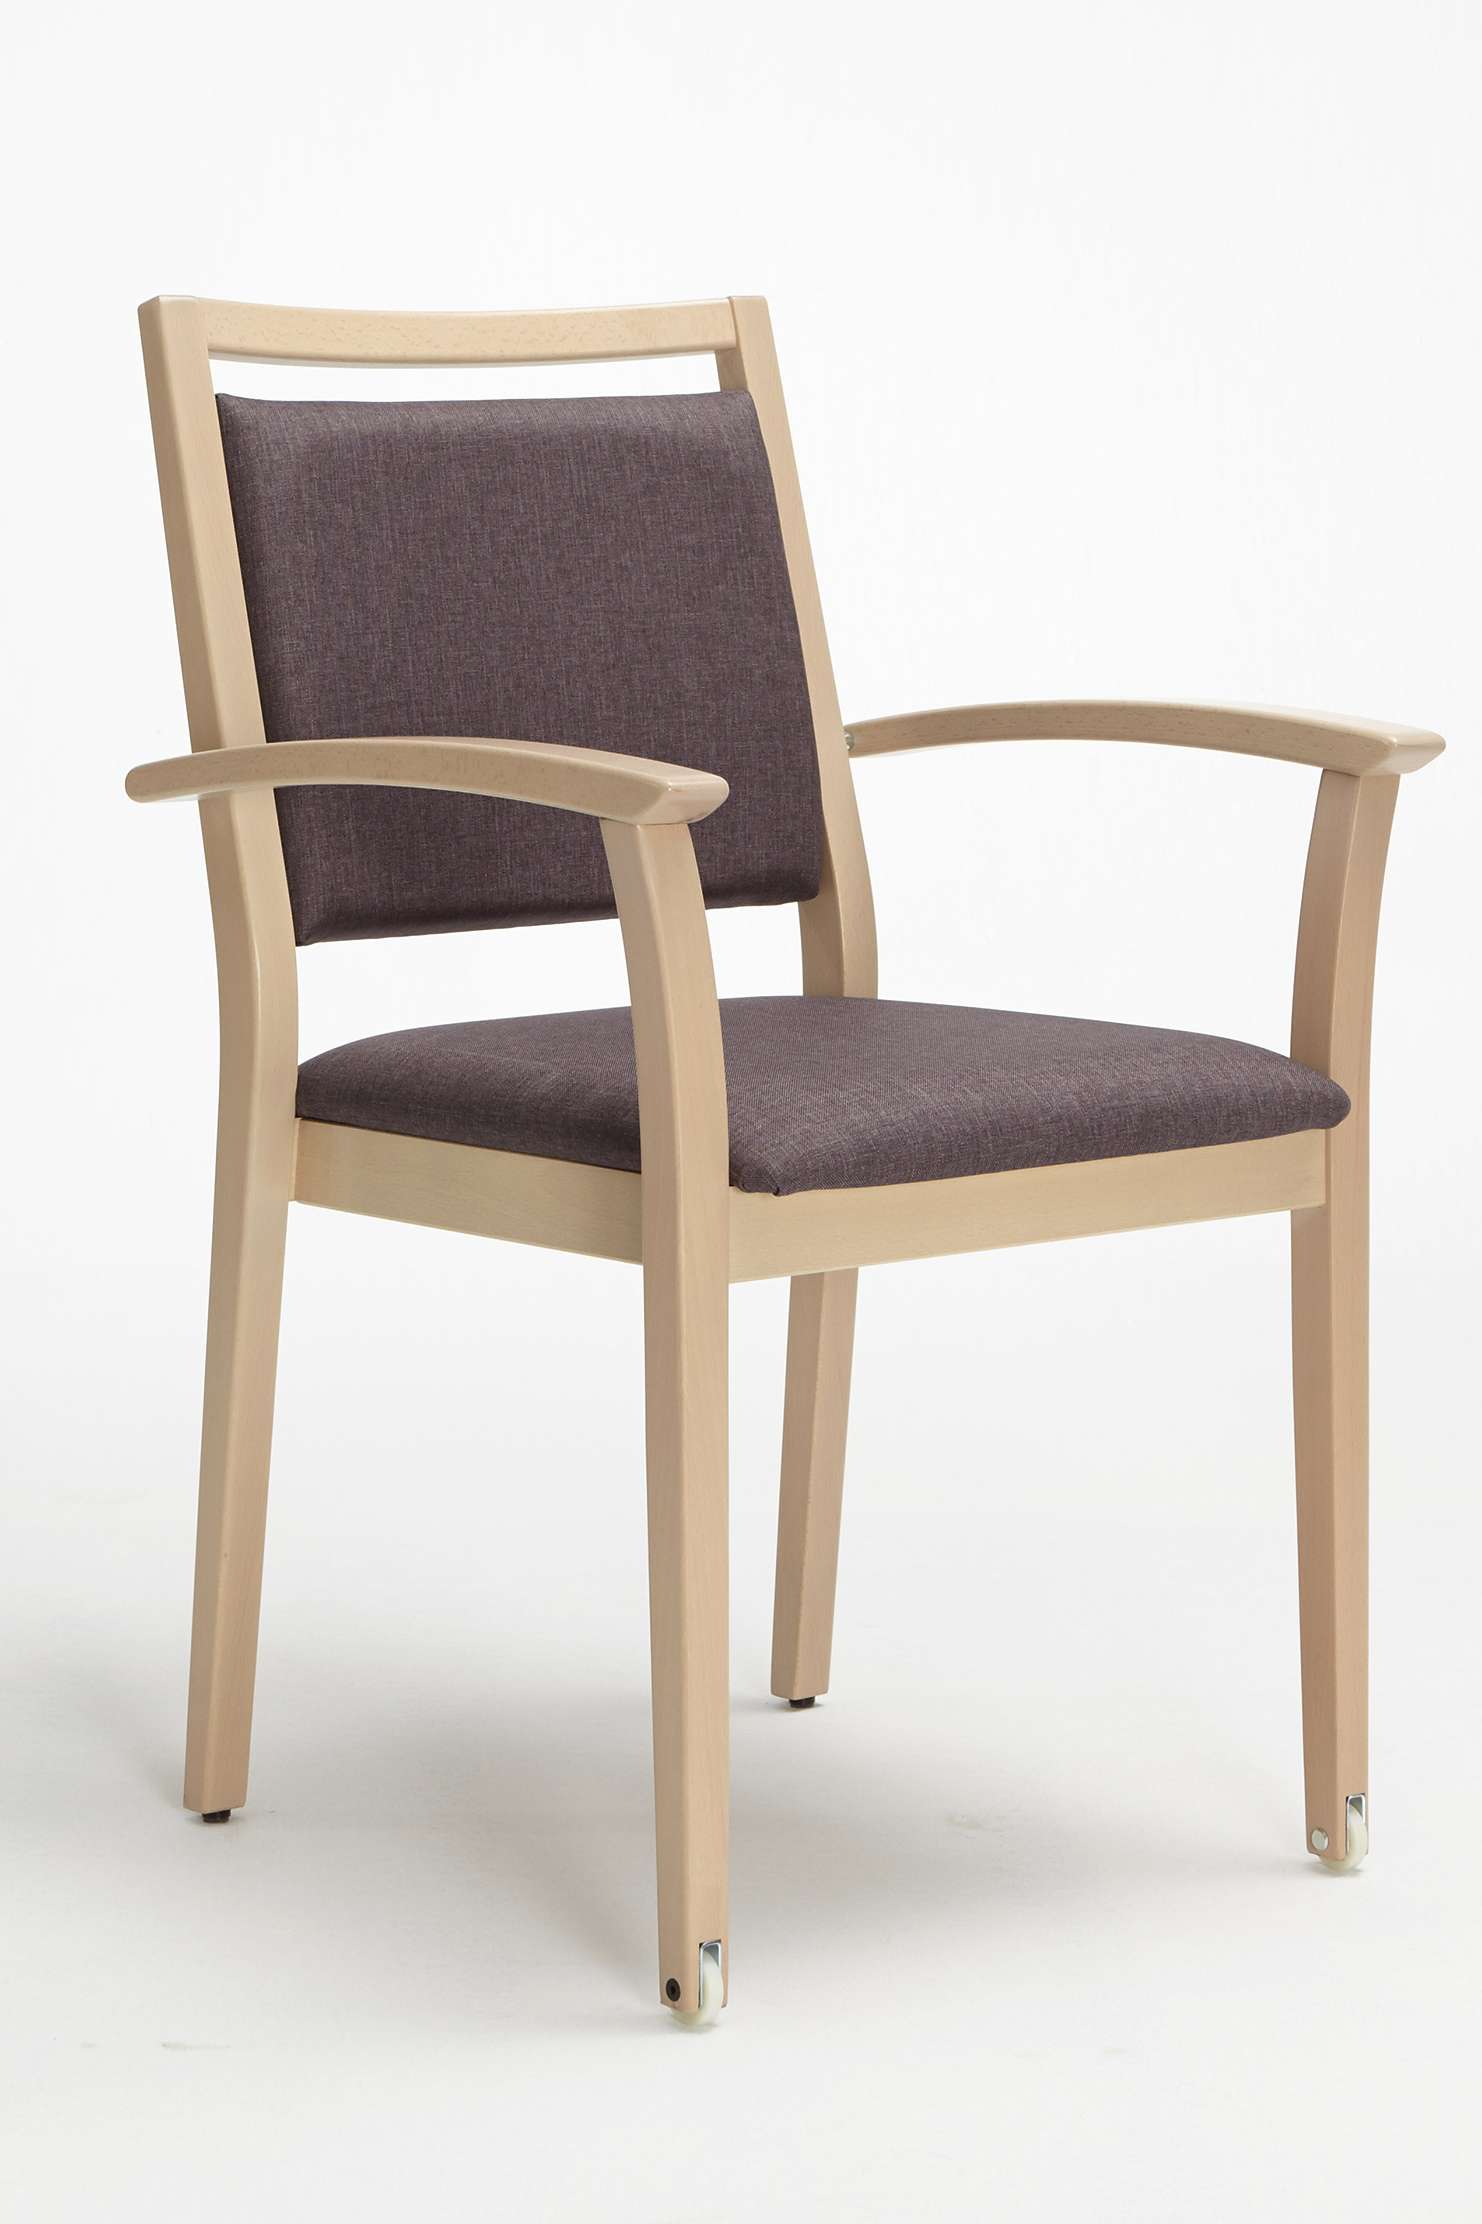 Model Mavo jako krzesło sztaplowane, z podłokietnikami